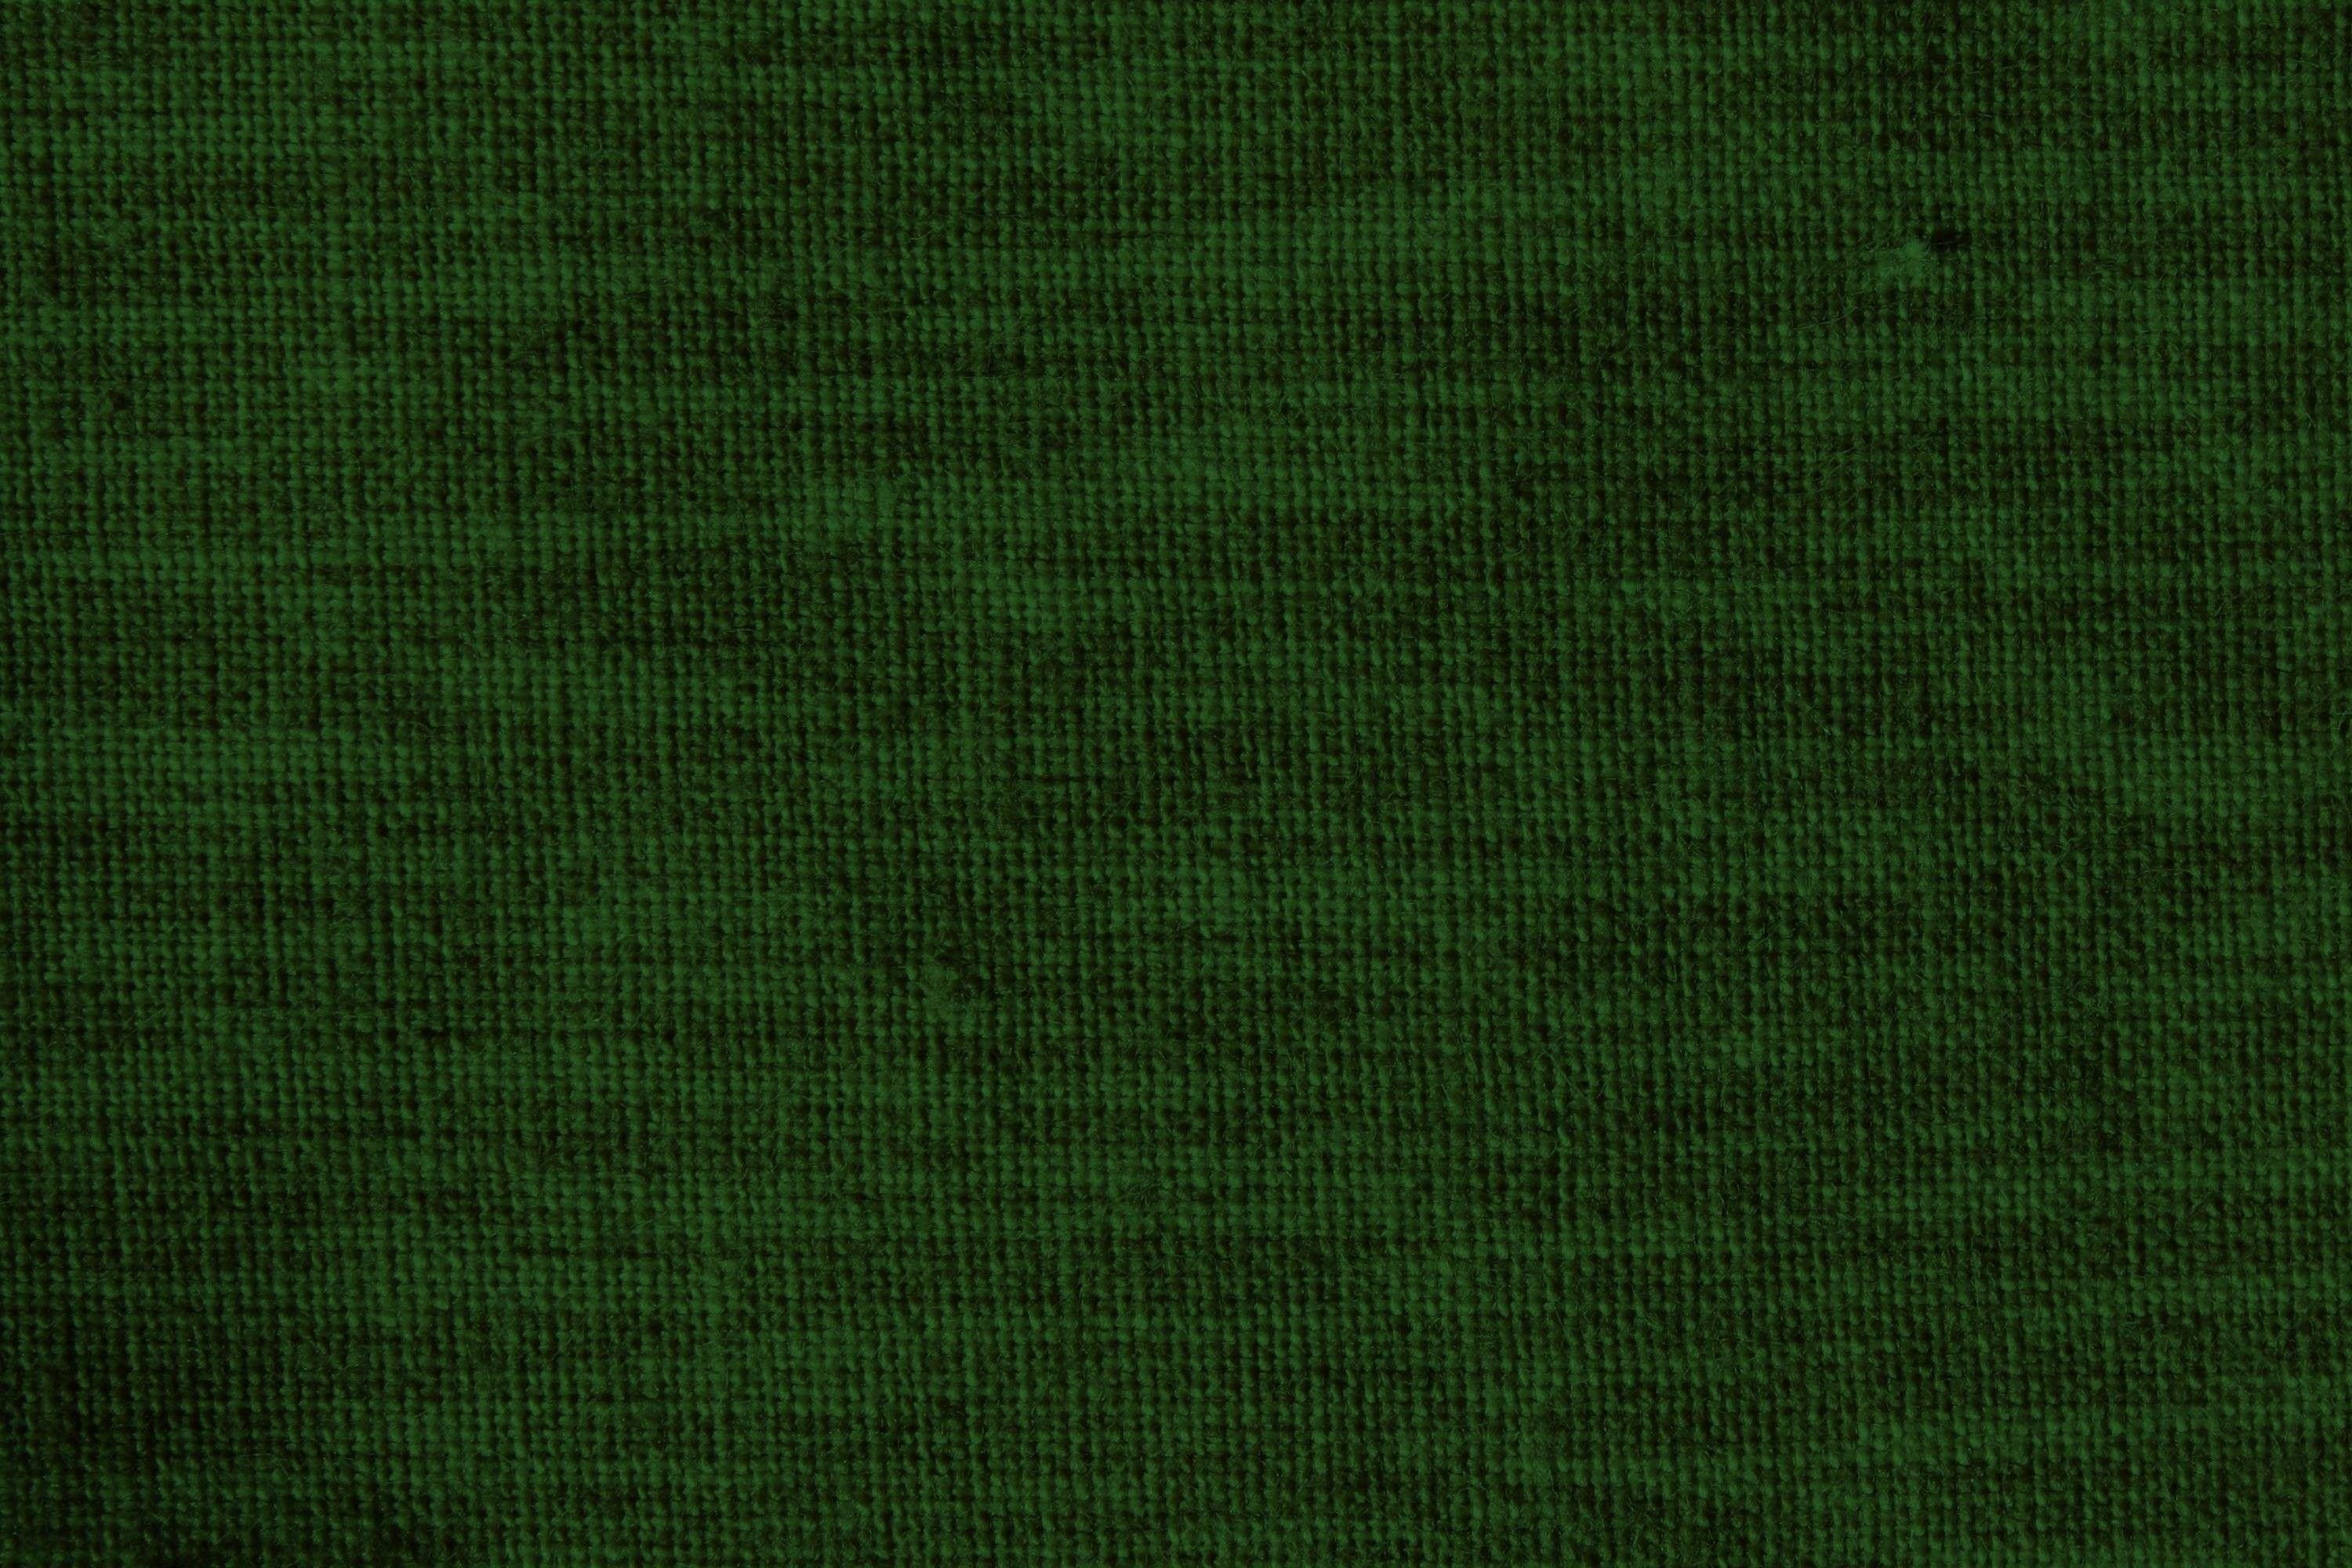 Dark Green Background Wallpaper